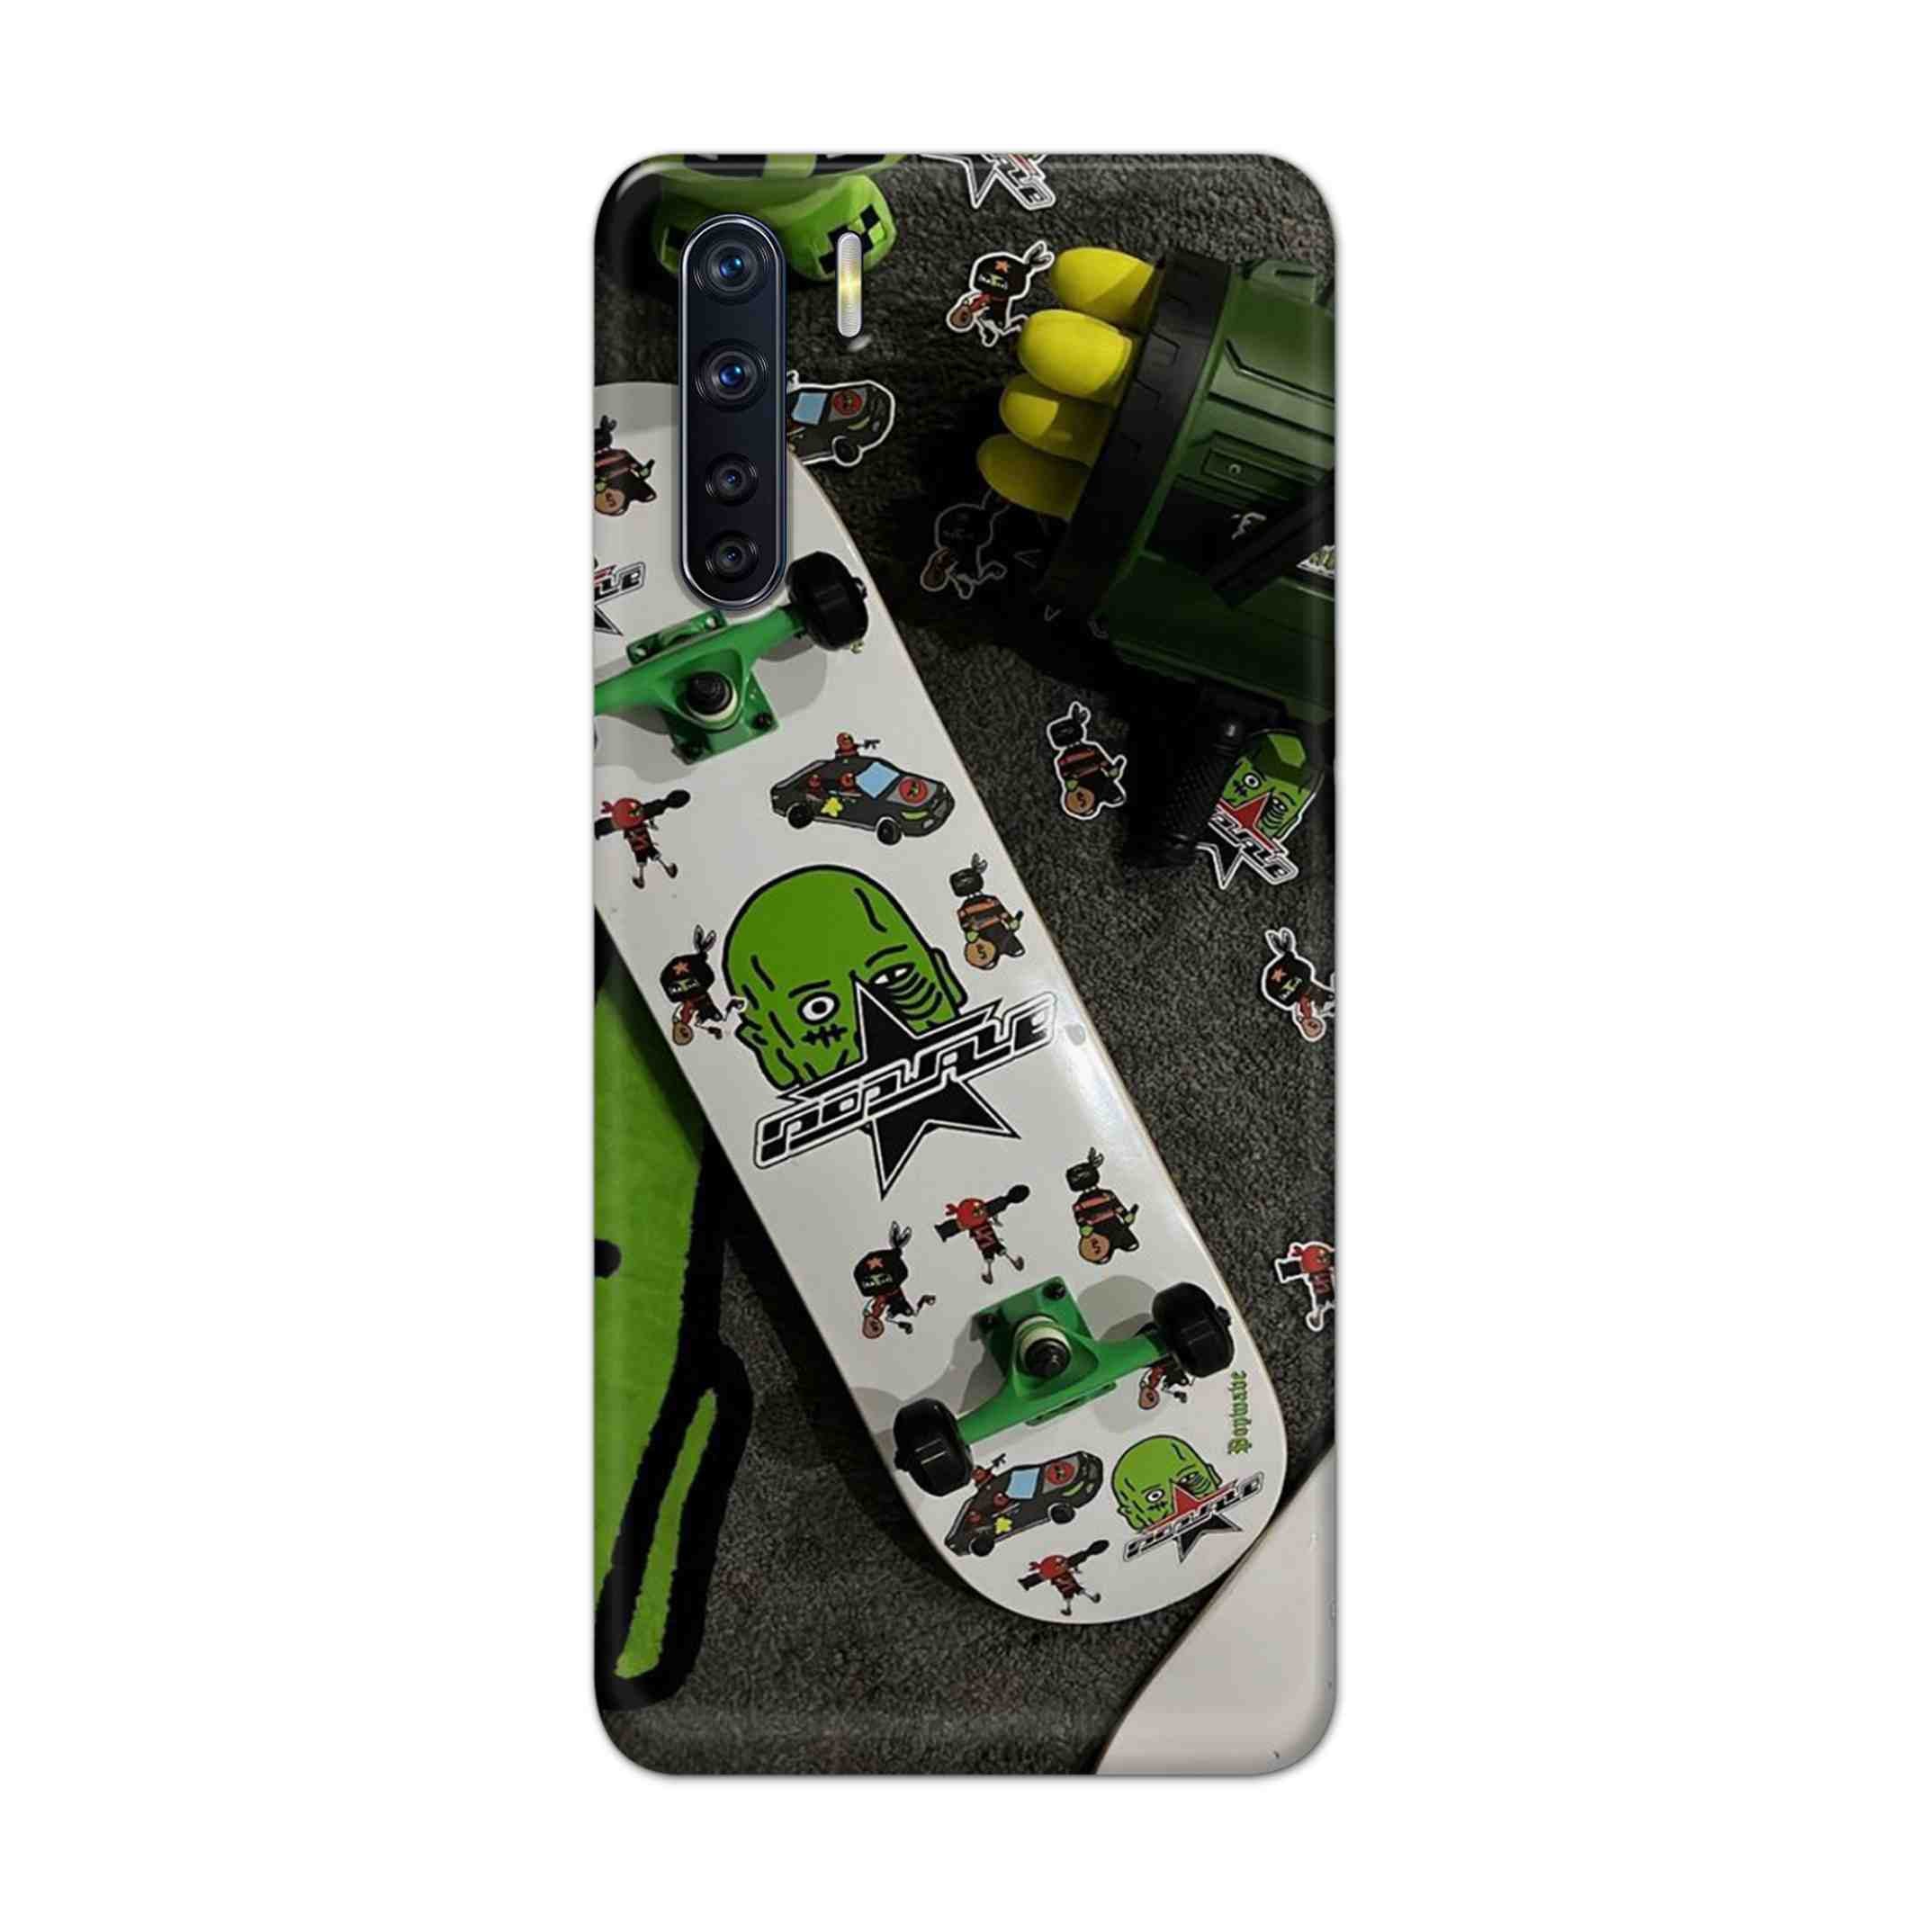 Buy Hulk Skateboard Hard Back Mobile Phone Case Cover For OPPO F15 Online